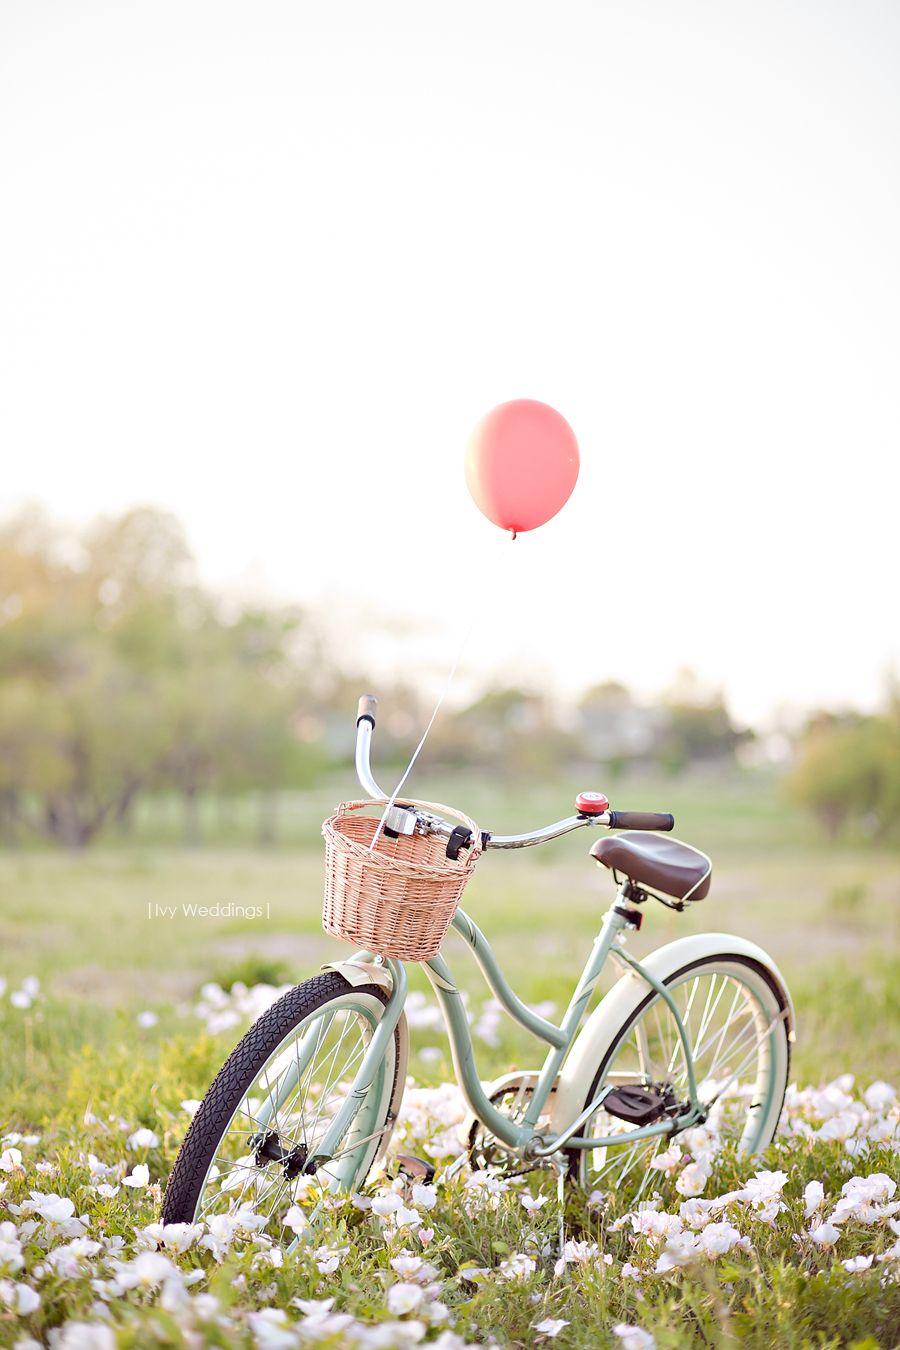 자전거 배경 아이폰,자전거,자전거 핸들 바,자전거 바퀴,자전거 액세서리,분홍